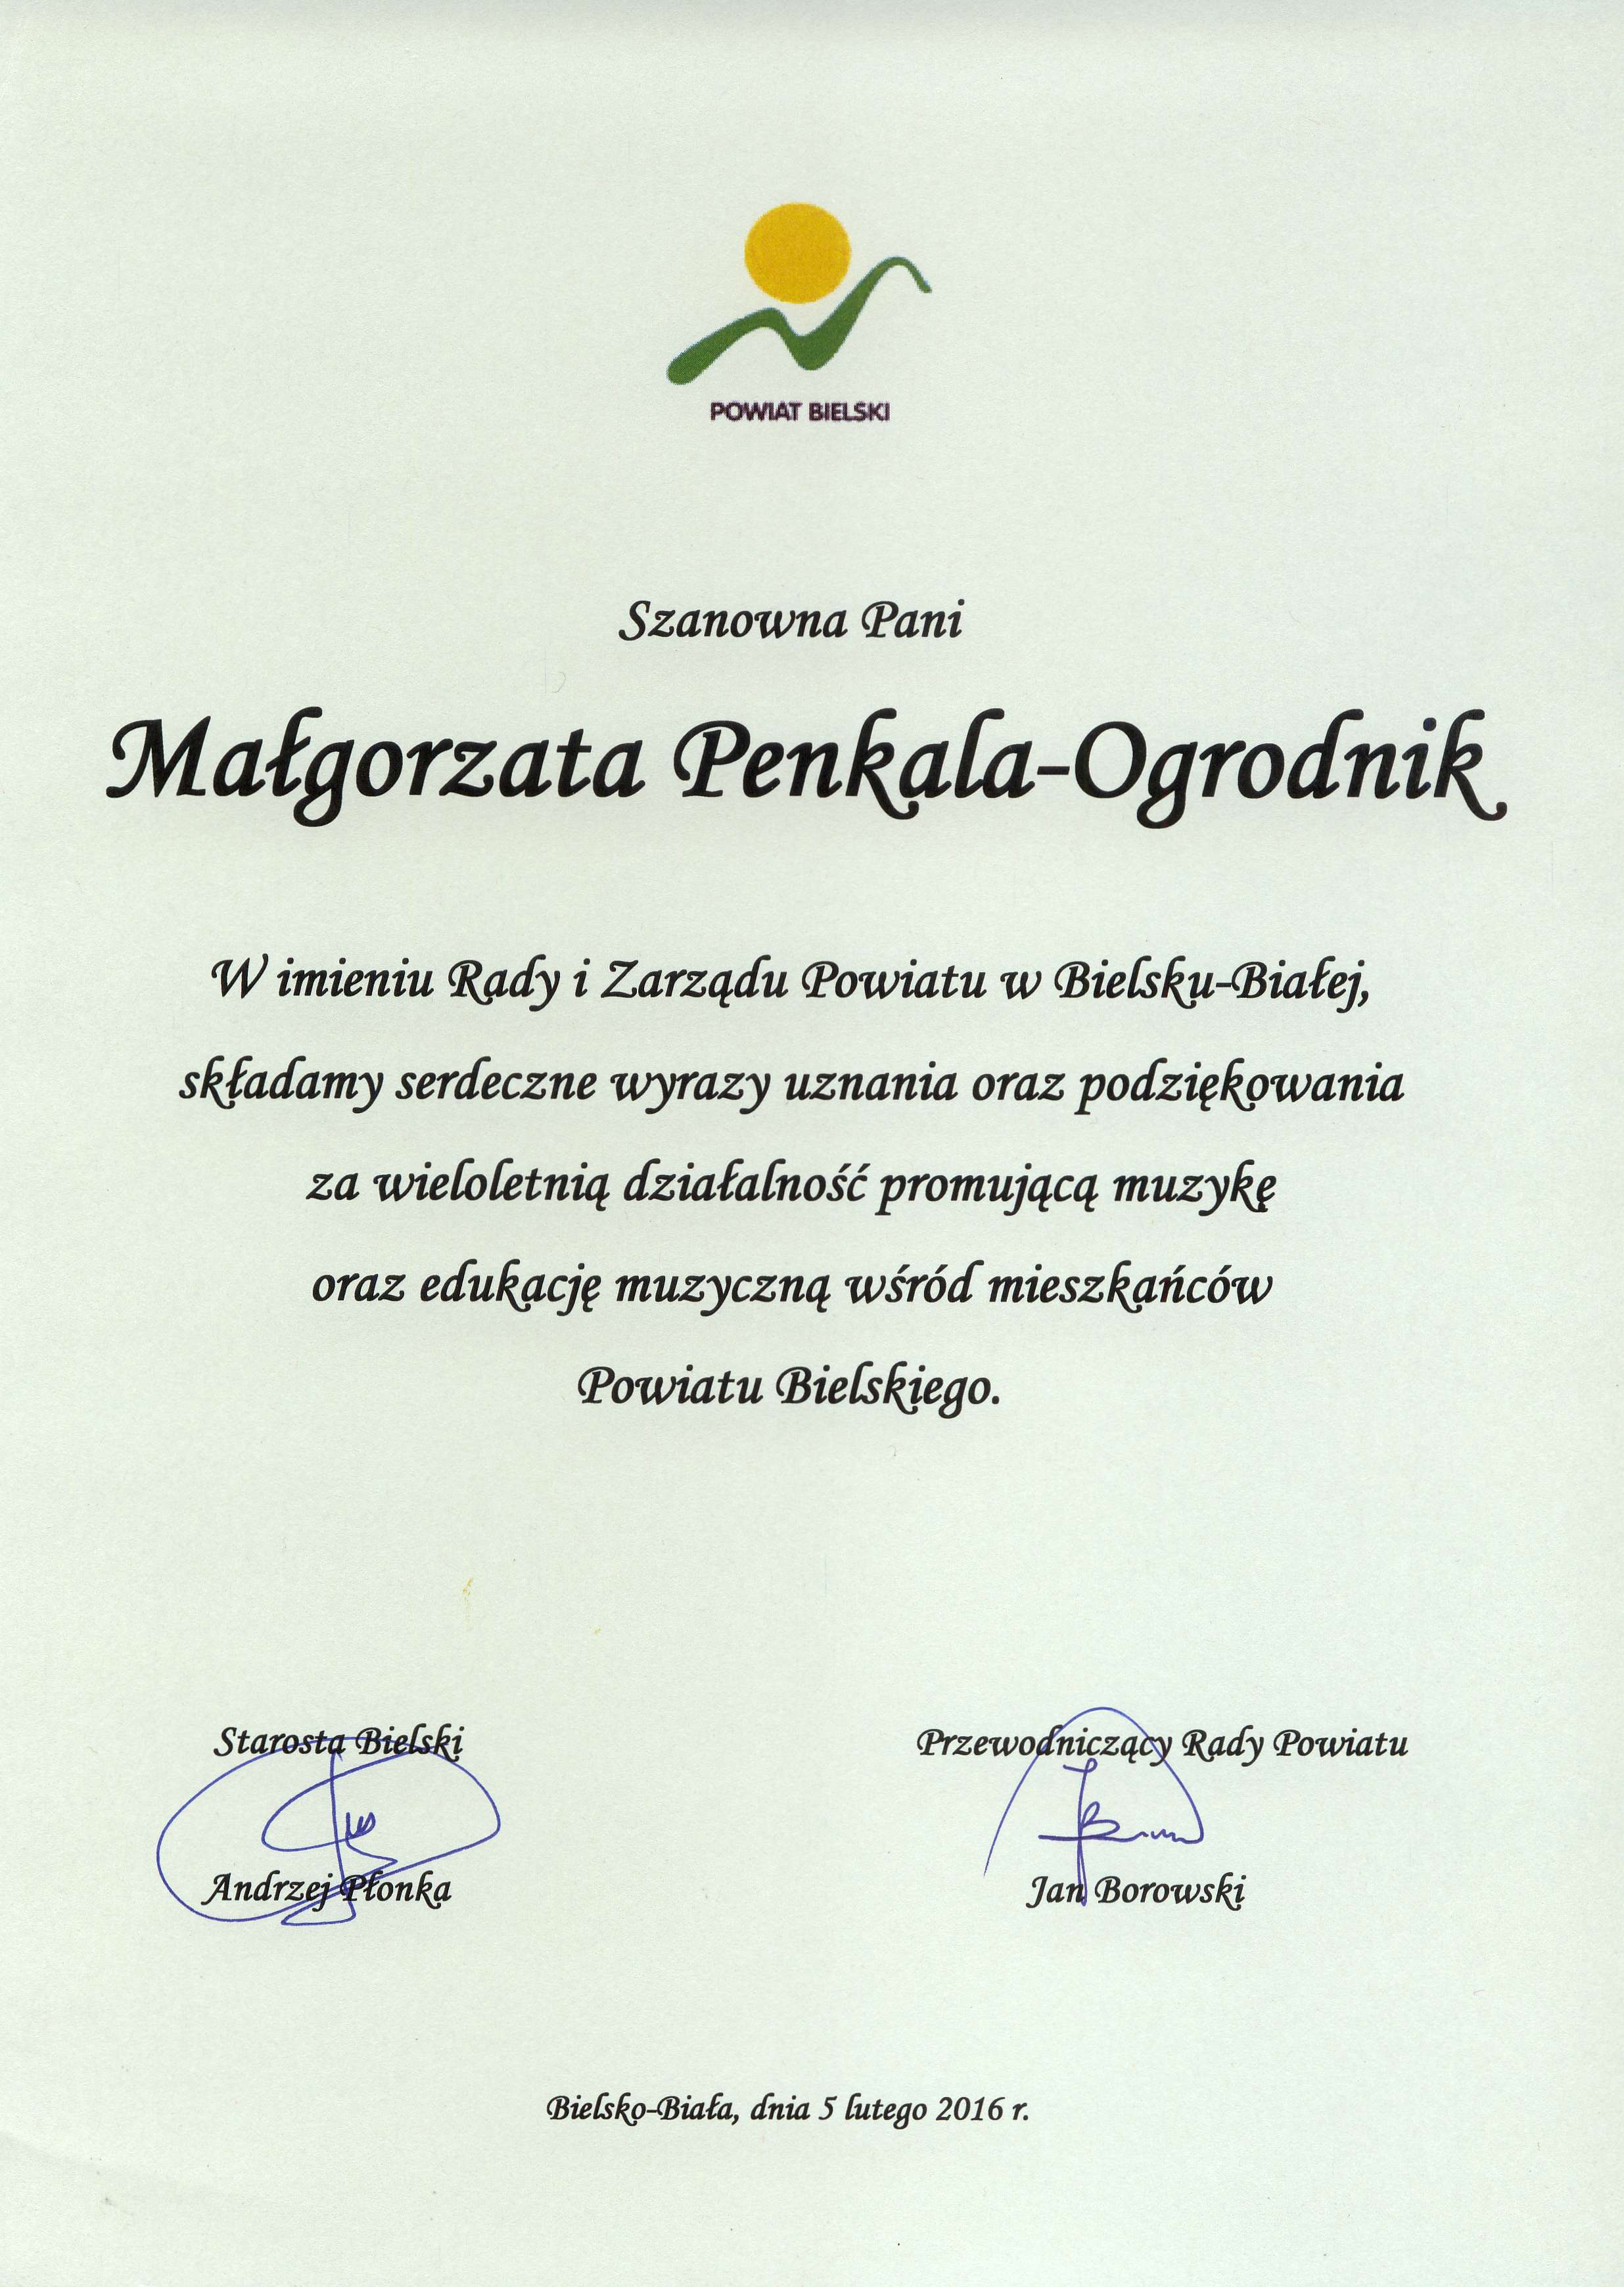 Nagroda Starosty Powiatu dla Małgorzaty Penkali-Ogrodnik